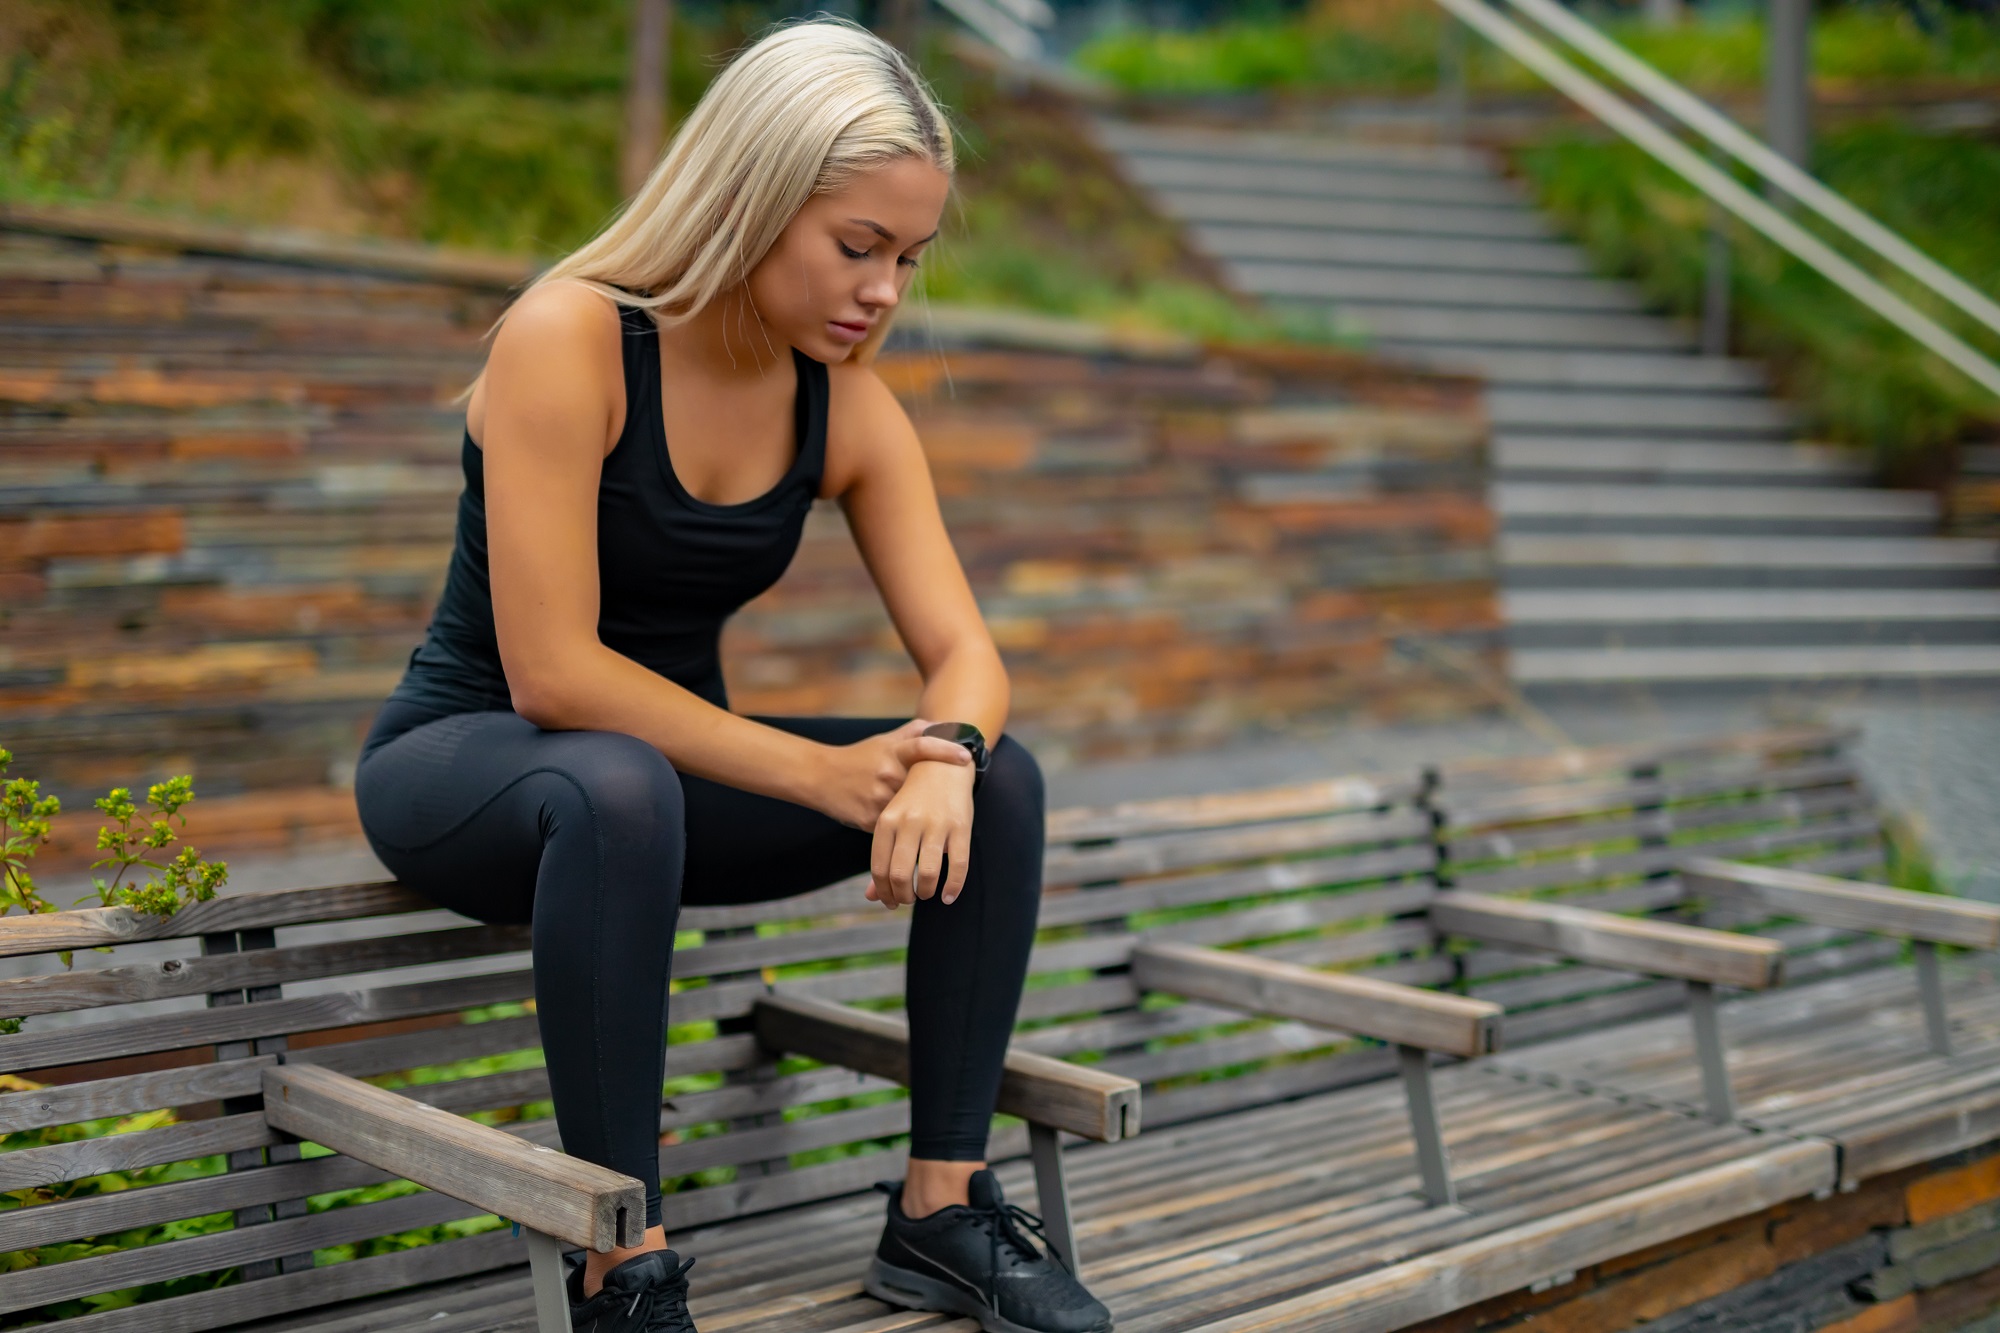 Fitness runner on mobile smart phone app tracking progress for fitness motivation.